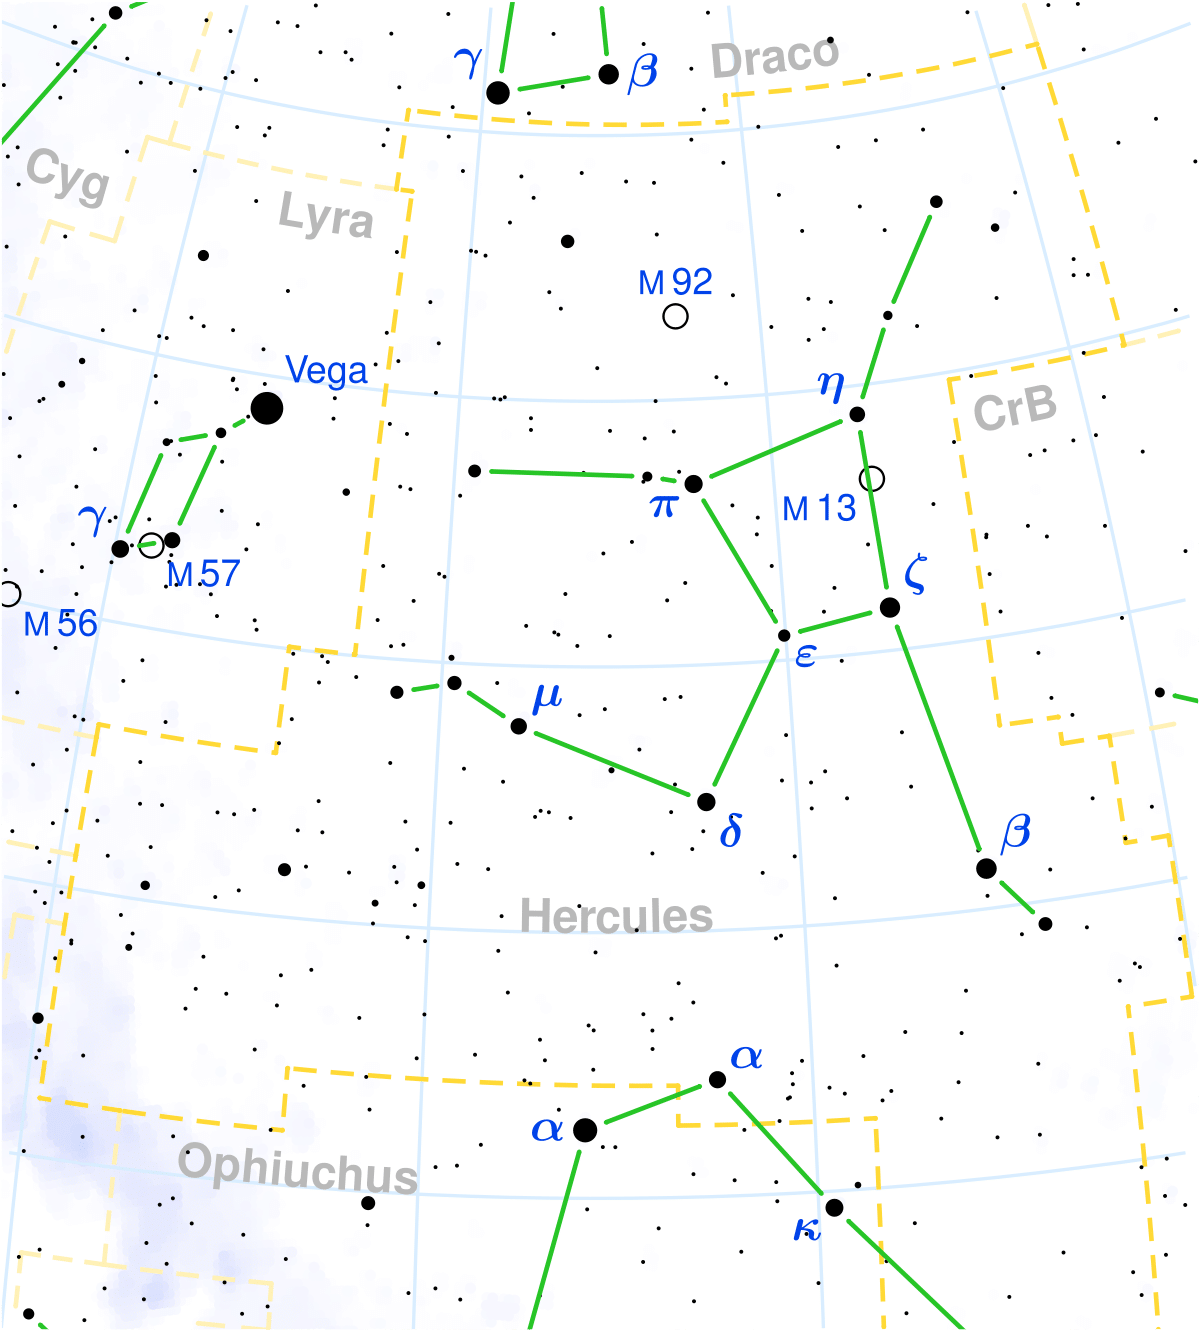 constelaciones hercules 1